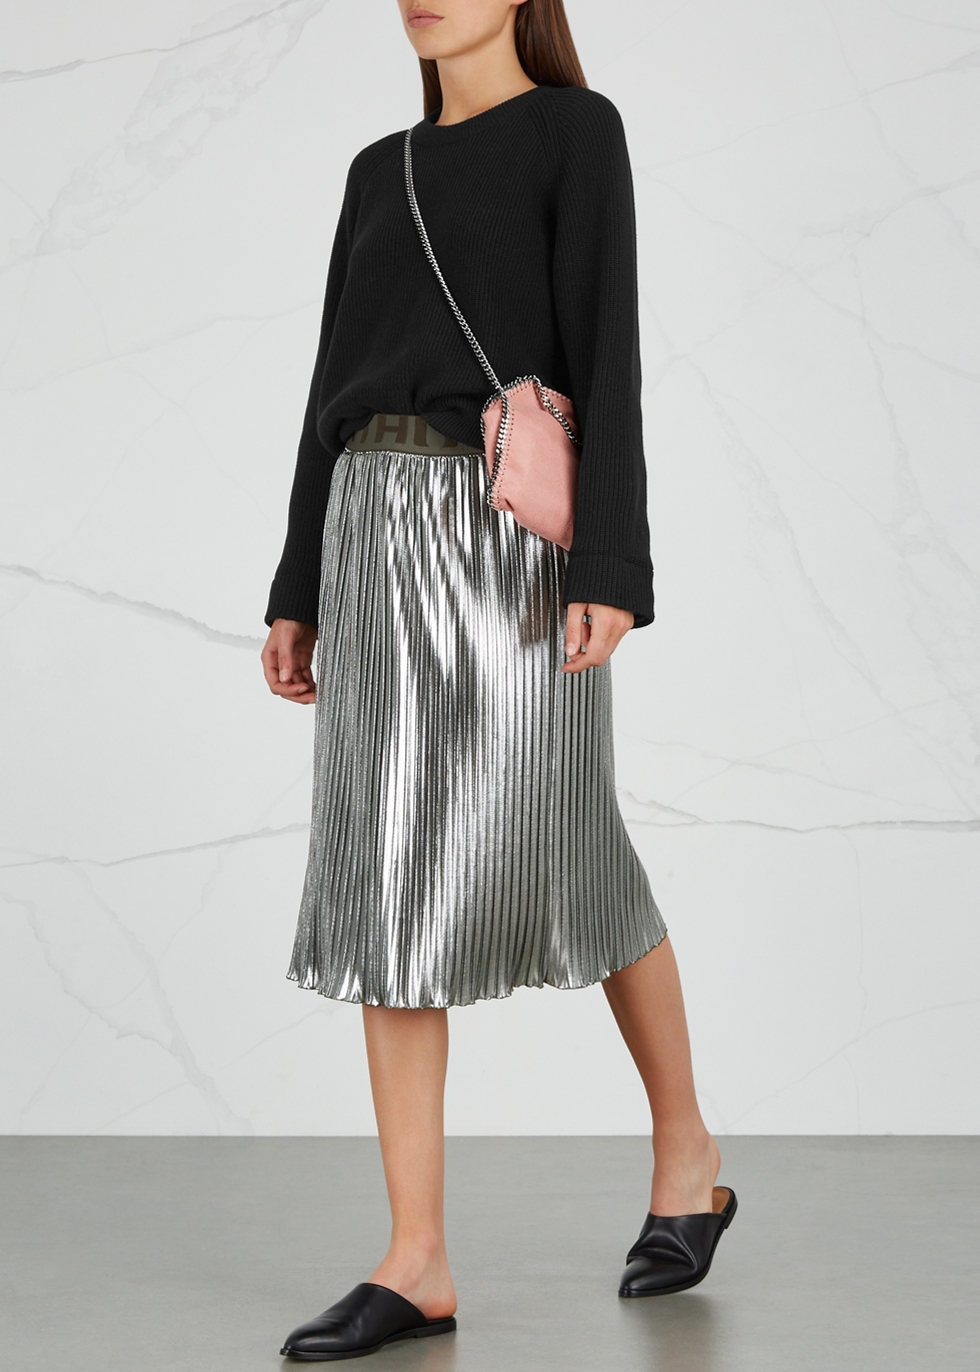 Rilesta silver pleated lamé skirt - HUGO